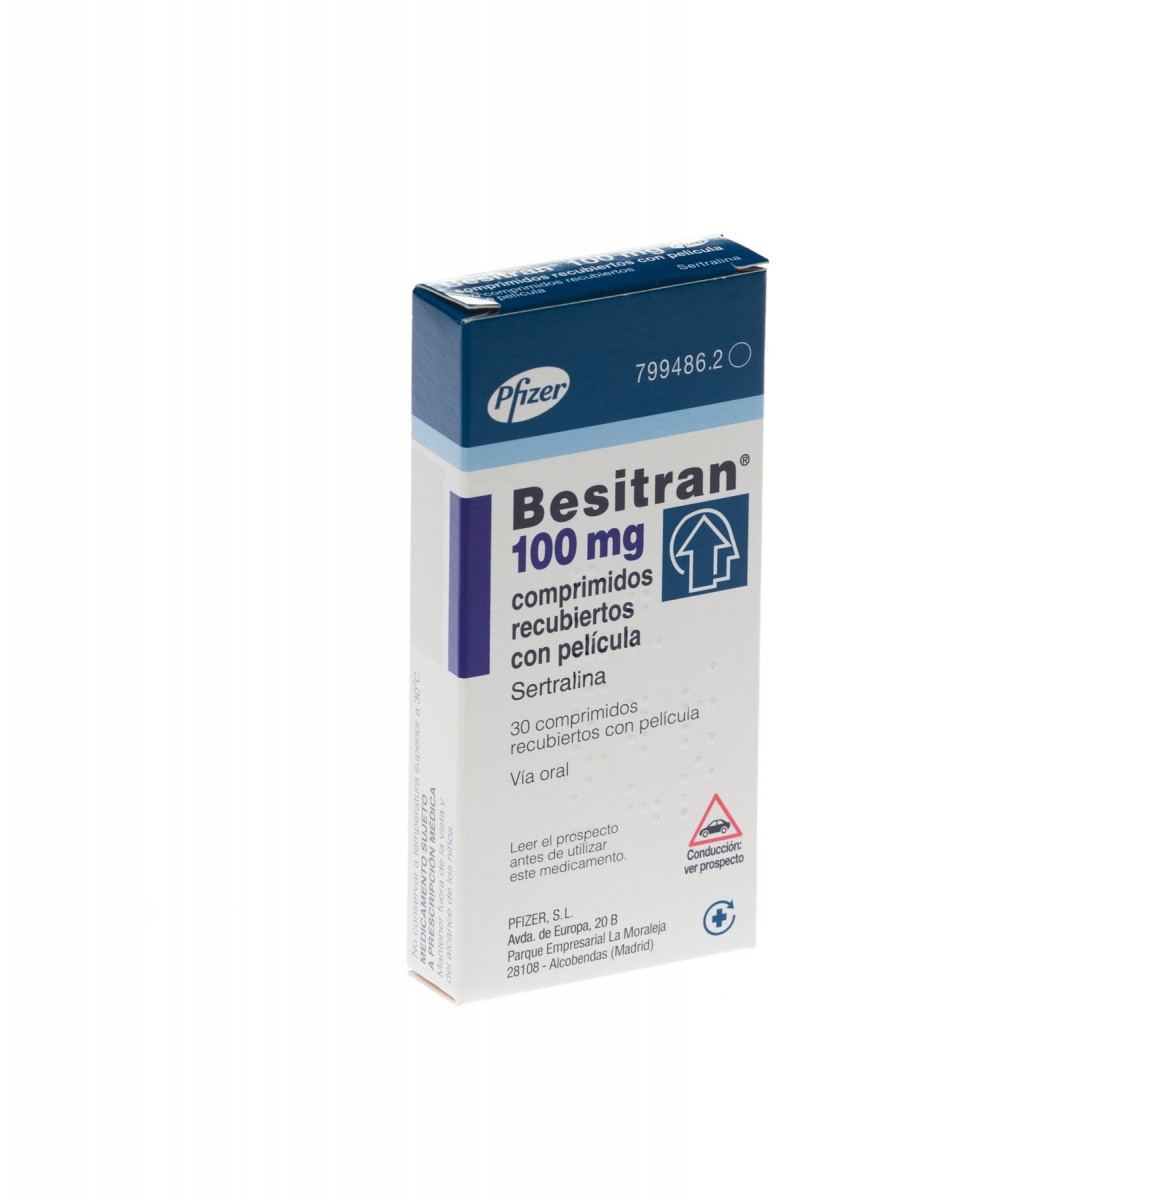 BESITRAN 100 mg COMPRIMIDOS RECUBIERTOS CON PELICULA , 30 comprimidos fotografía del envase.